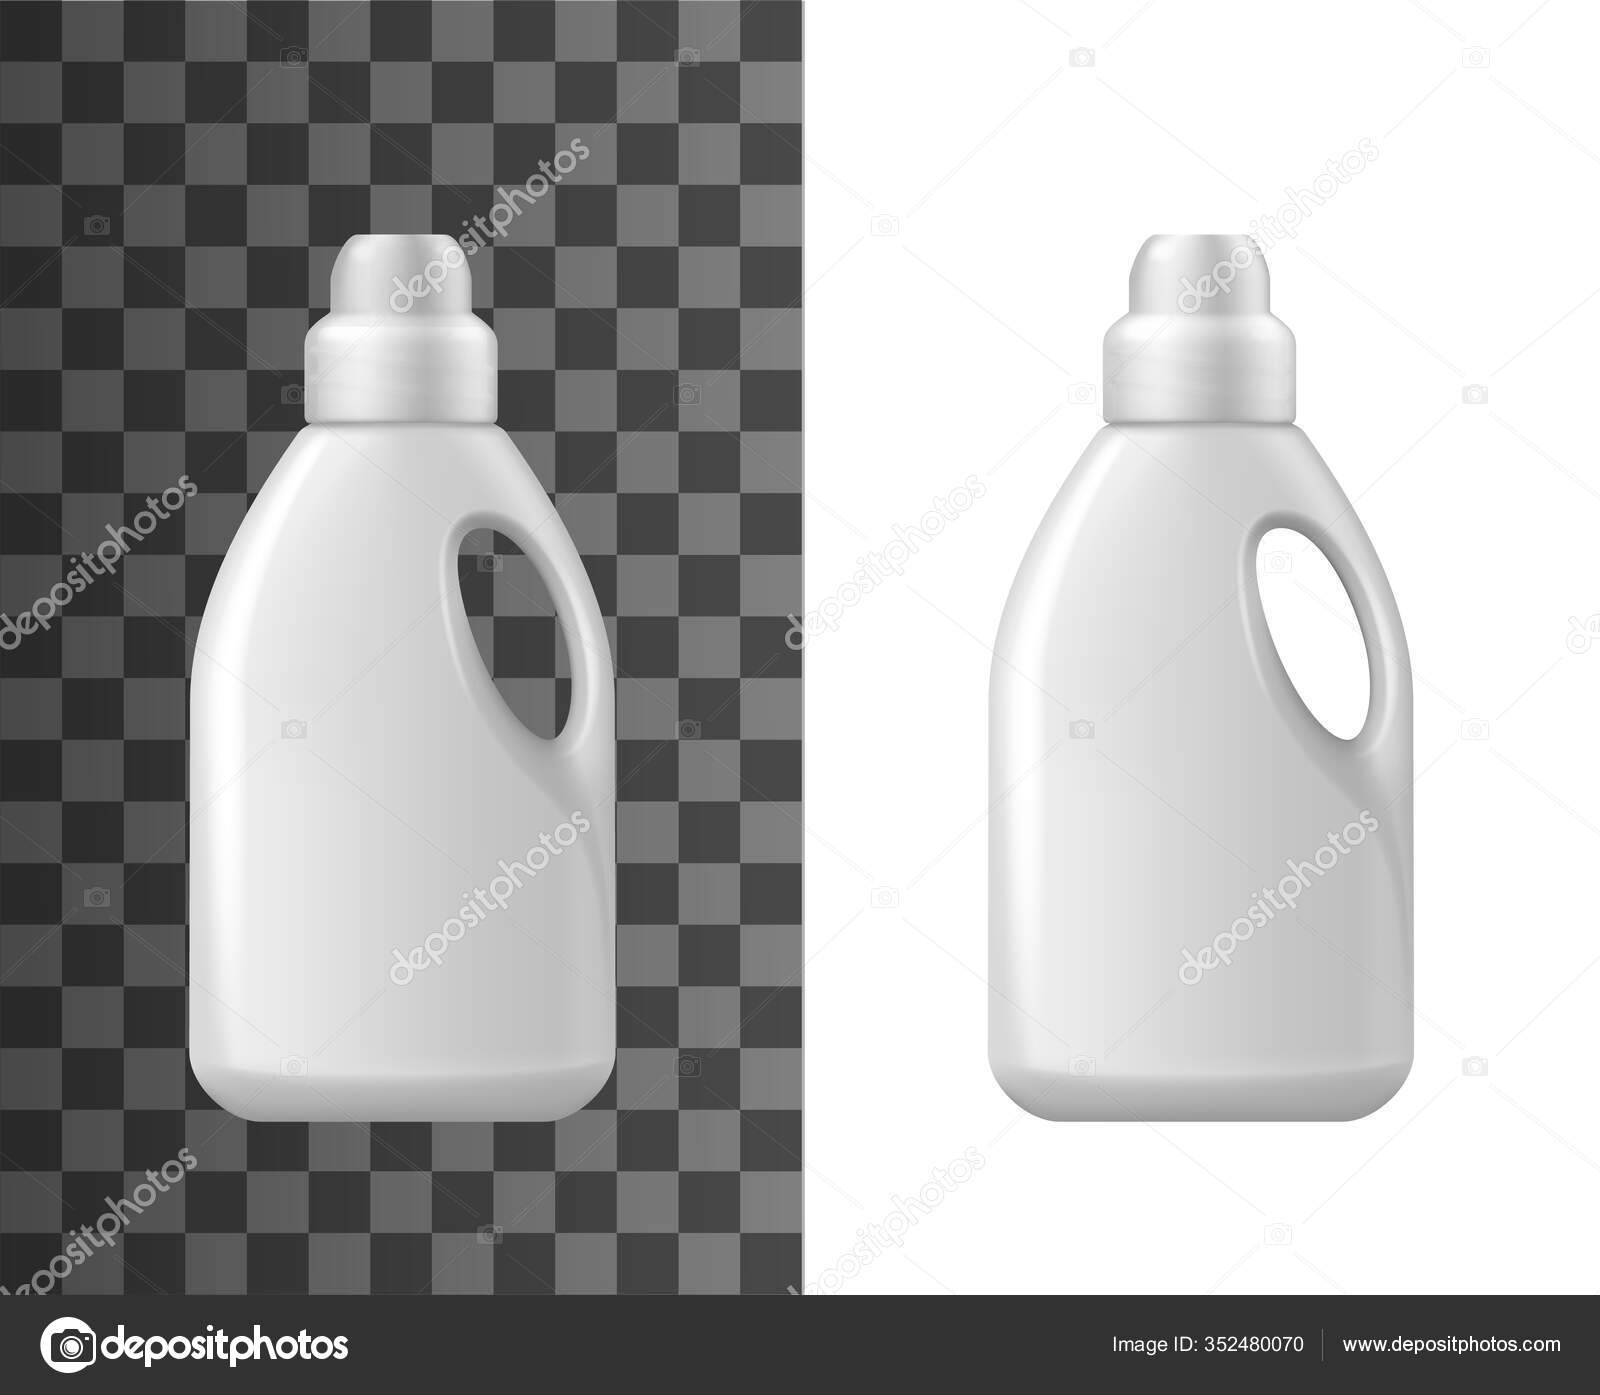 la maquette de la bouteille blanche réaliste contient un emballage